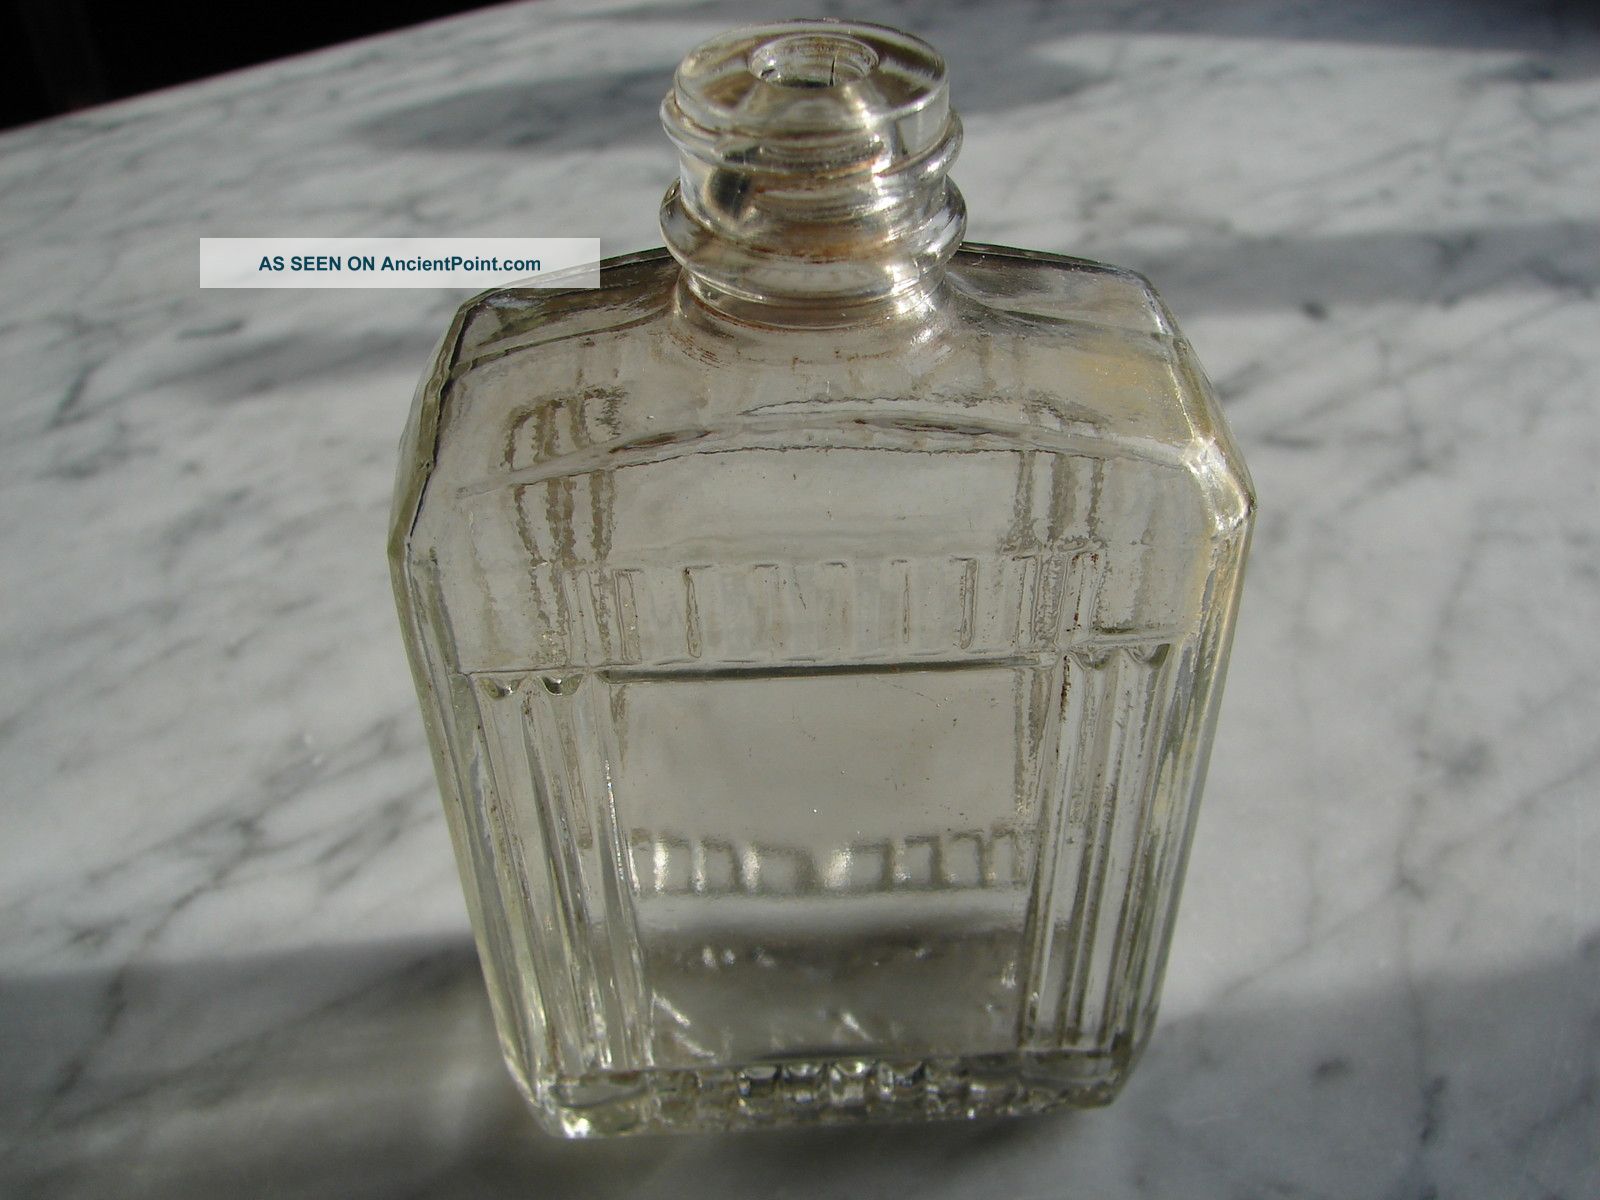 Fitch Antique Decorative Glass Perfume Bottle Vintage